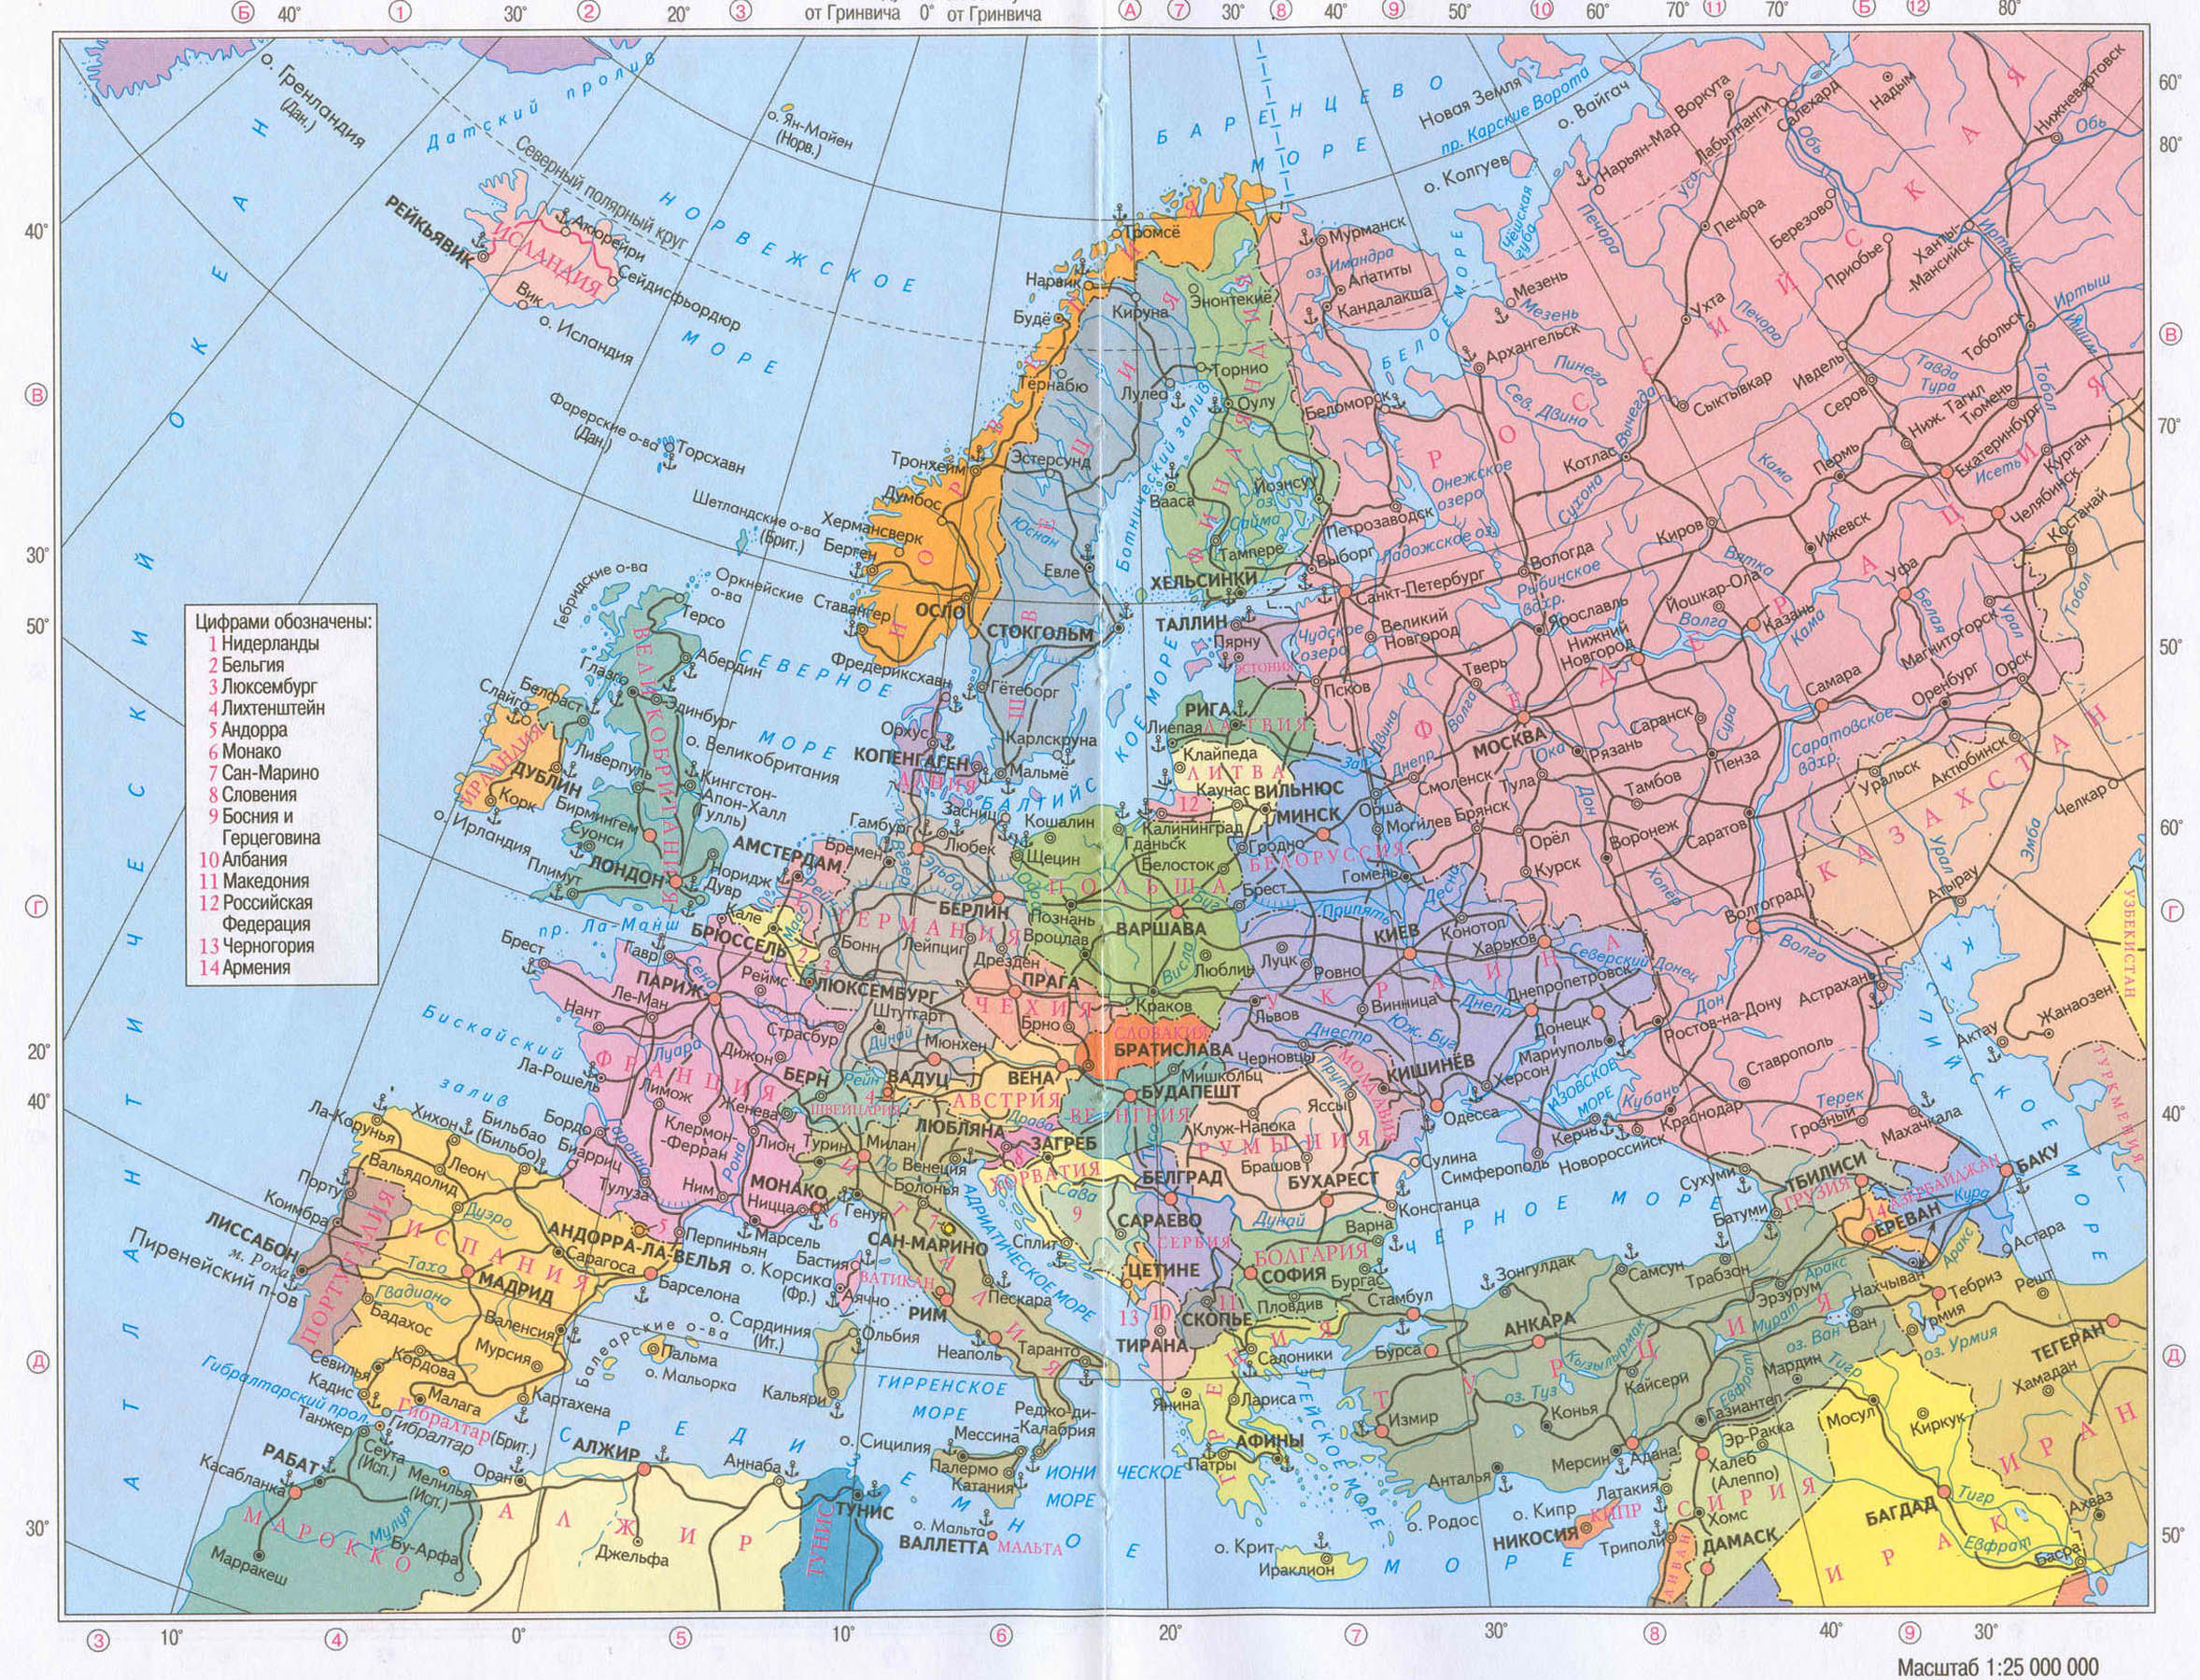 Политическая карта Европы. 